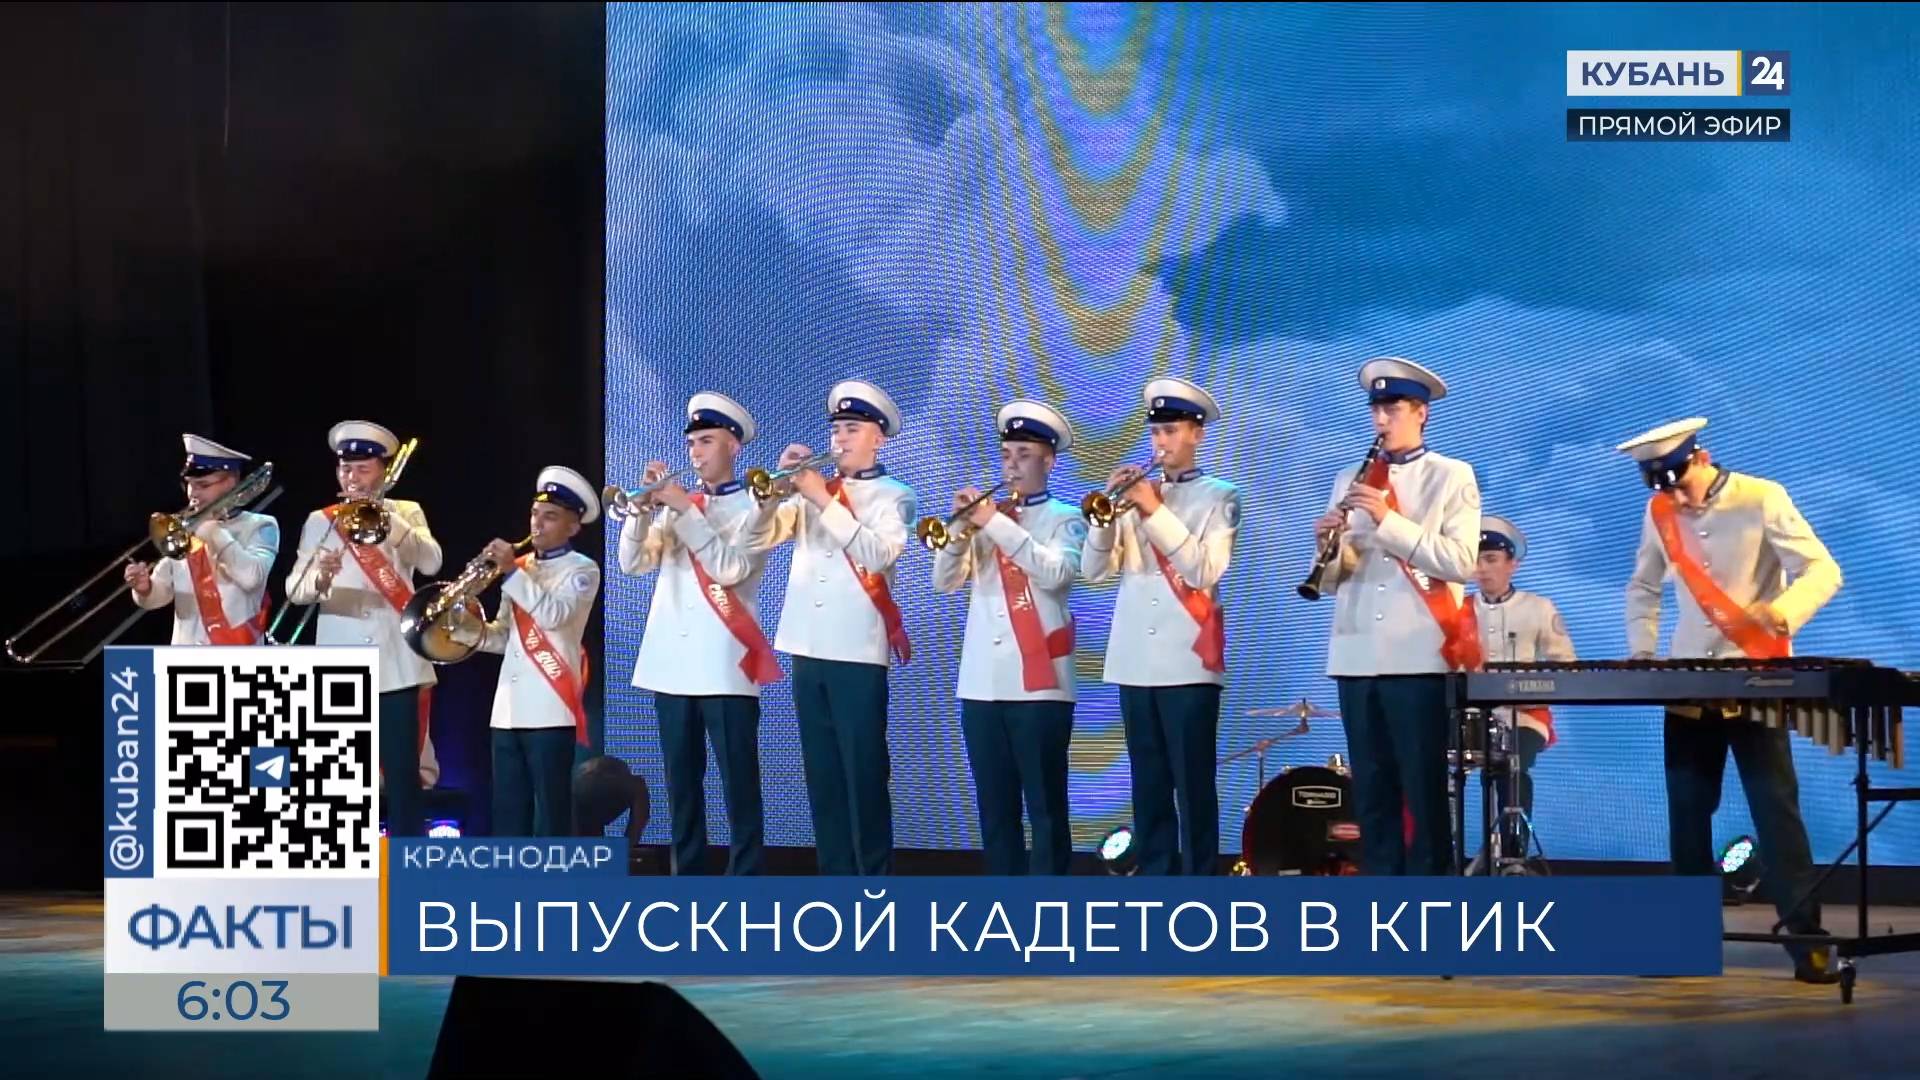 Первый выпуск музыкального кадетского корпуса прошел в КГИК